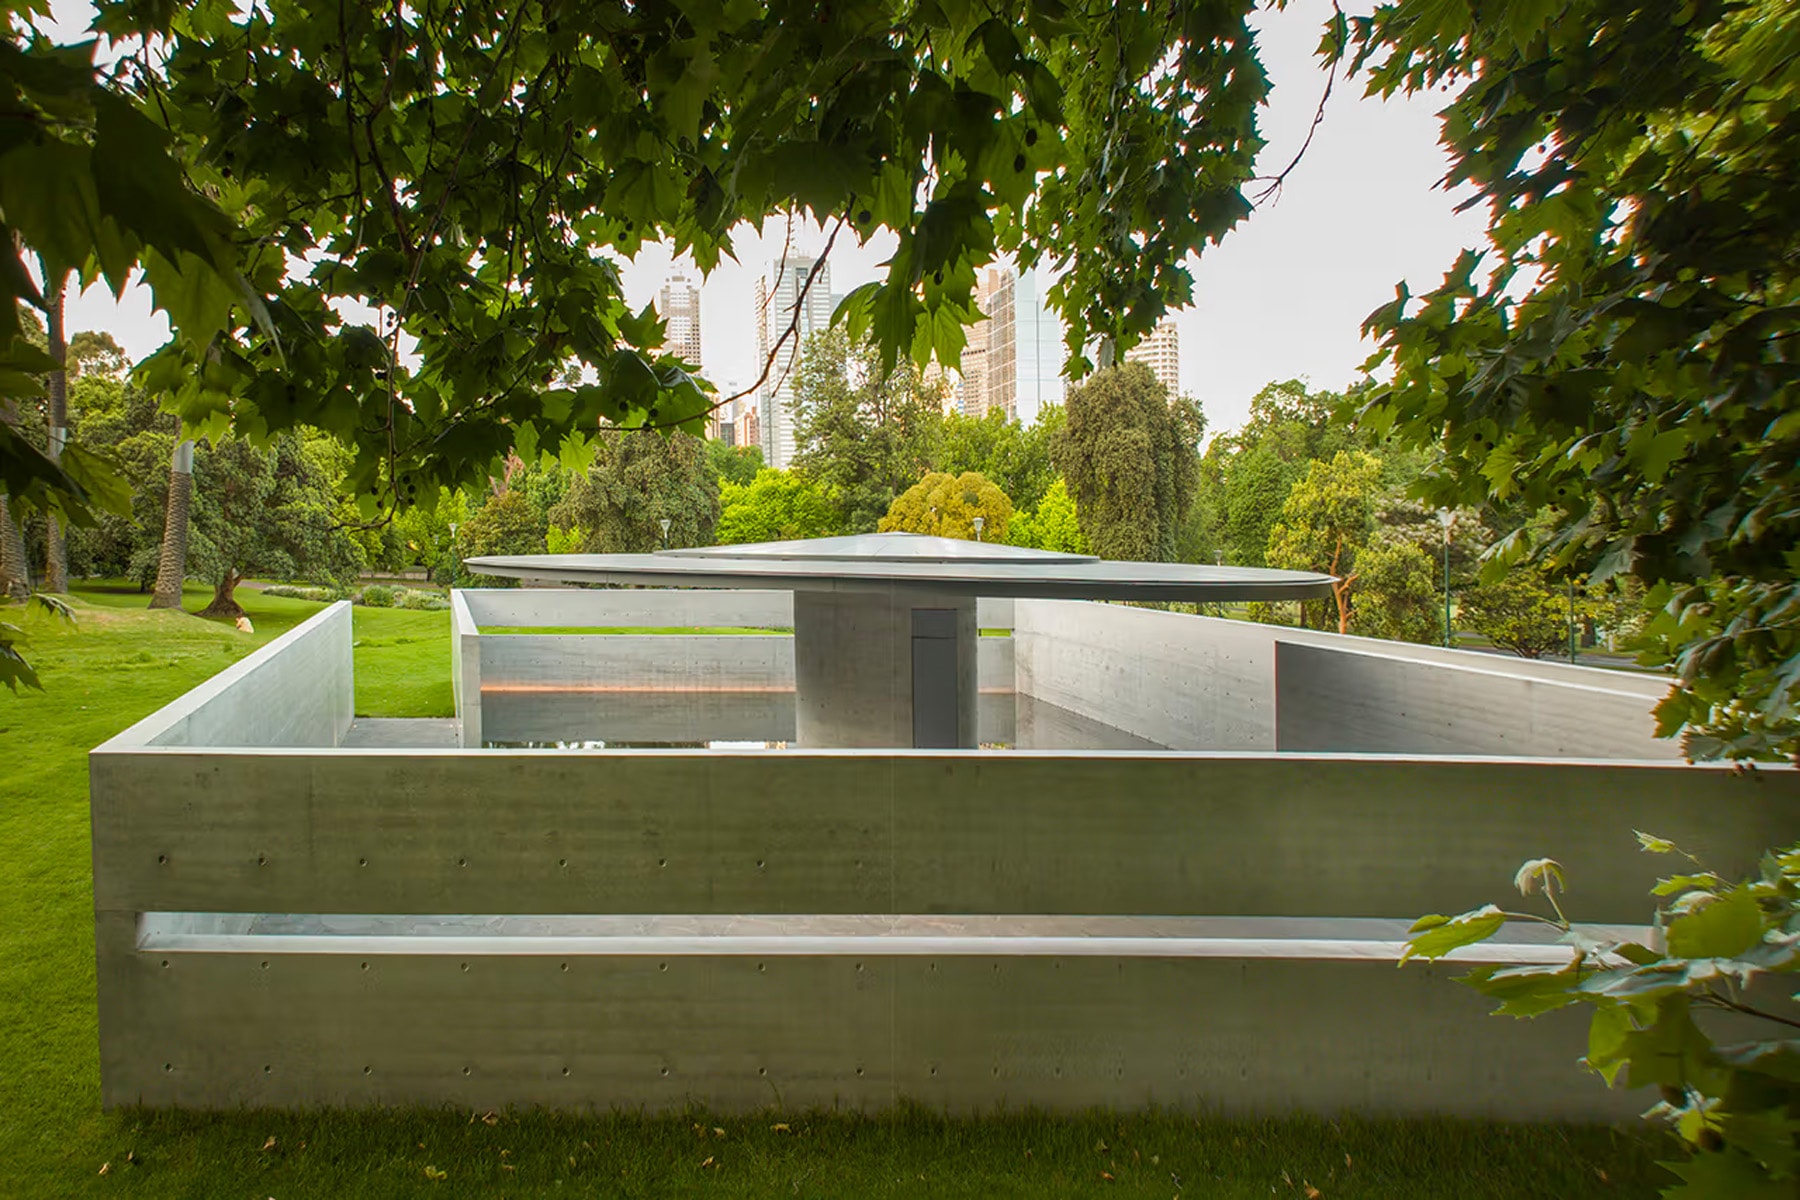 傳奇建築師安藤忠雄設計之花園涼亭正式開放參觀